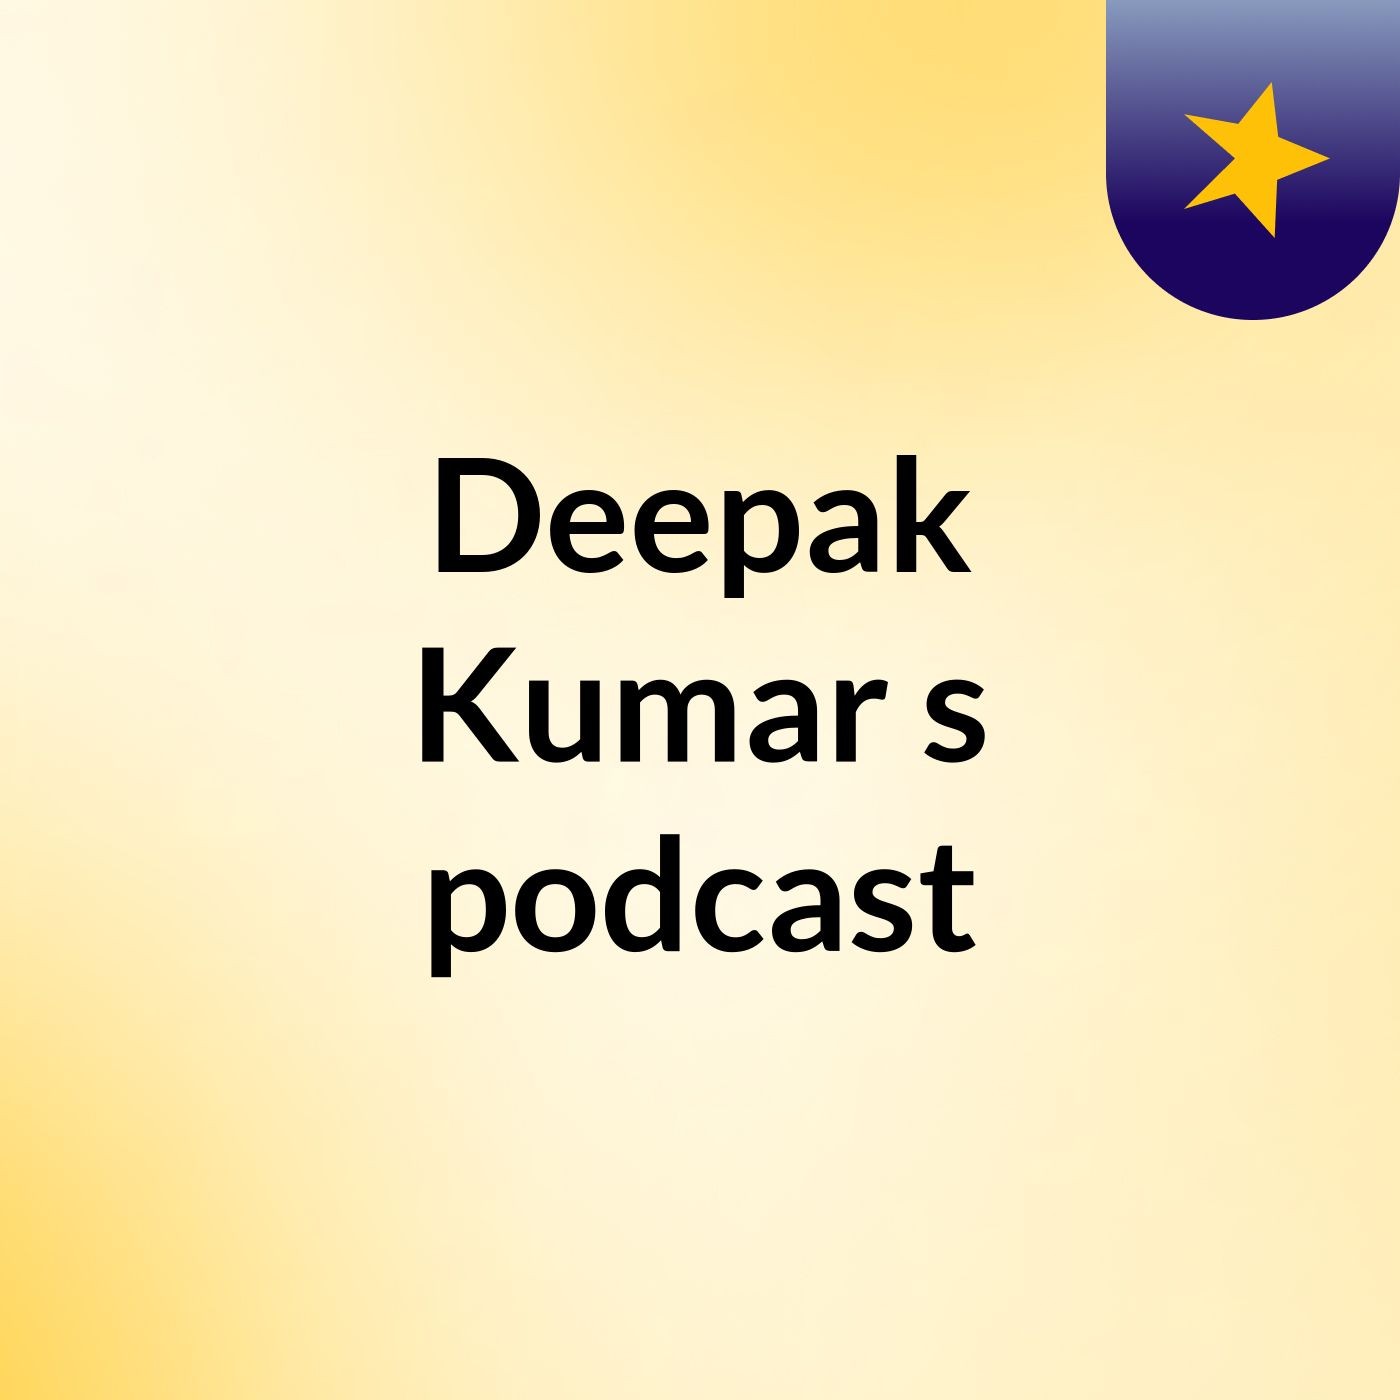 Deepak Kumar's podcast